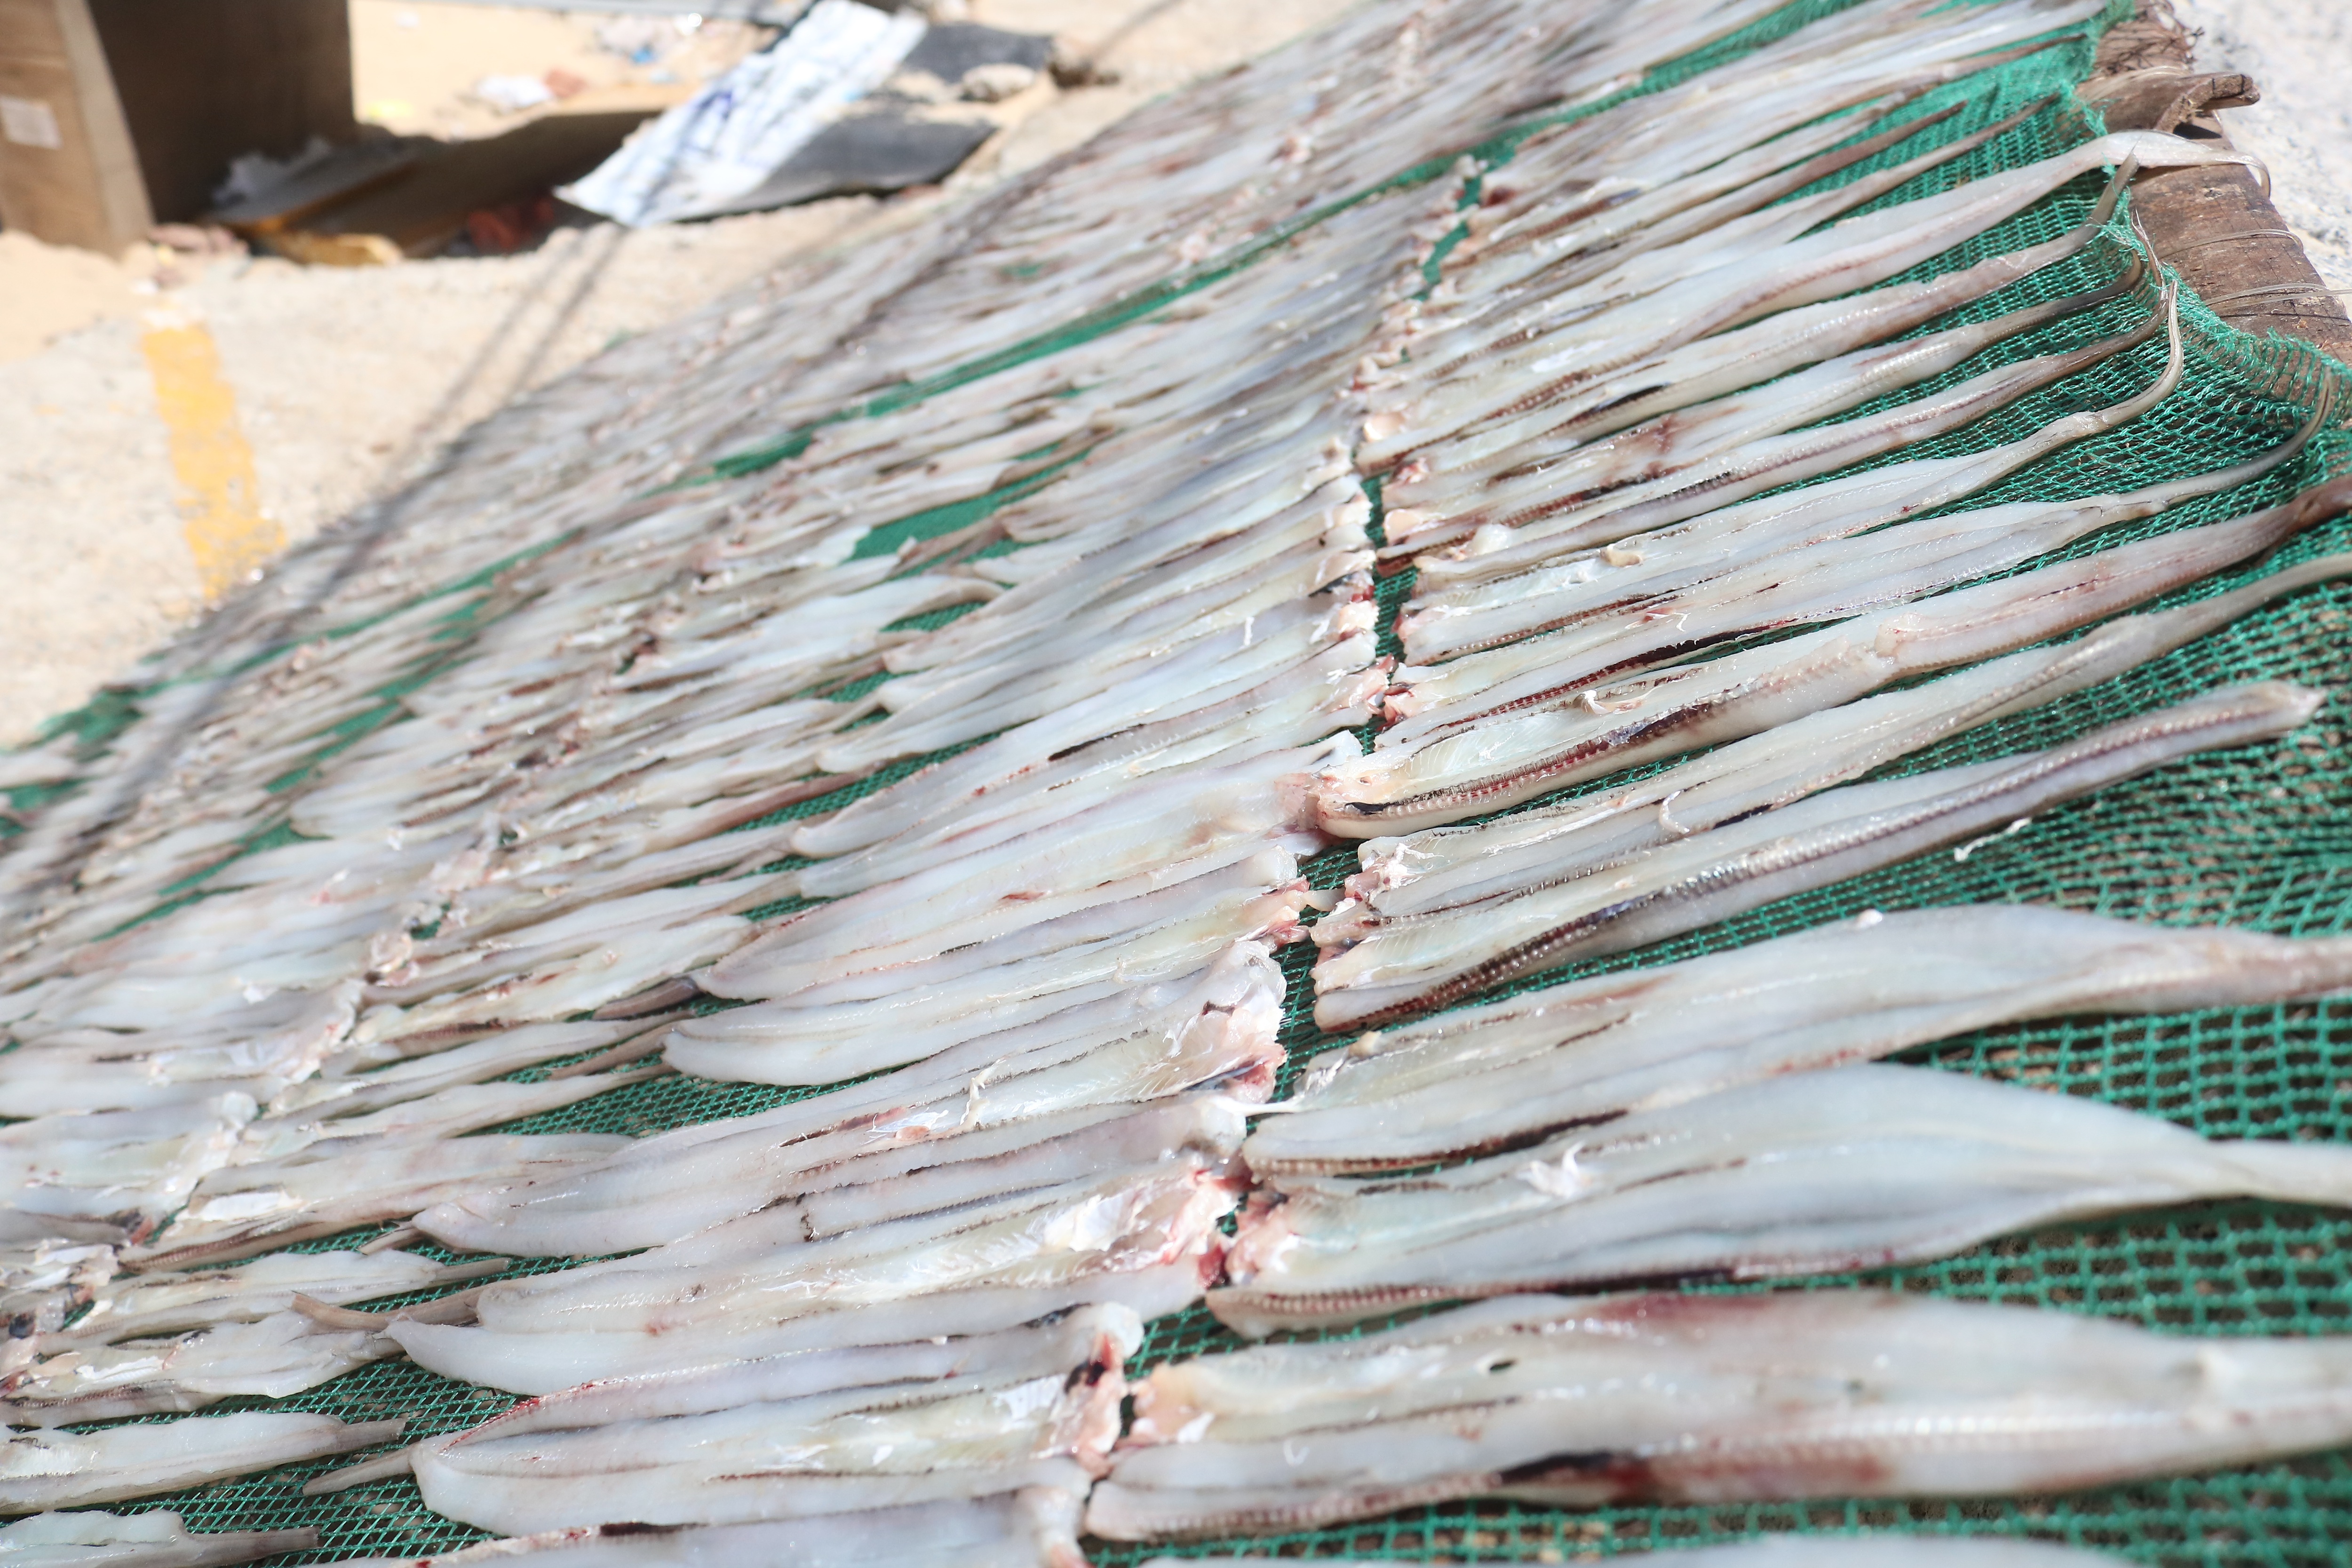 Làm giàu từ hải sản khô, người phụ nữ làng biển thu lãi 2 tỷ đồng mỗi năm - 2